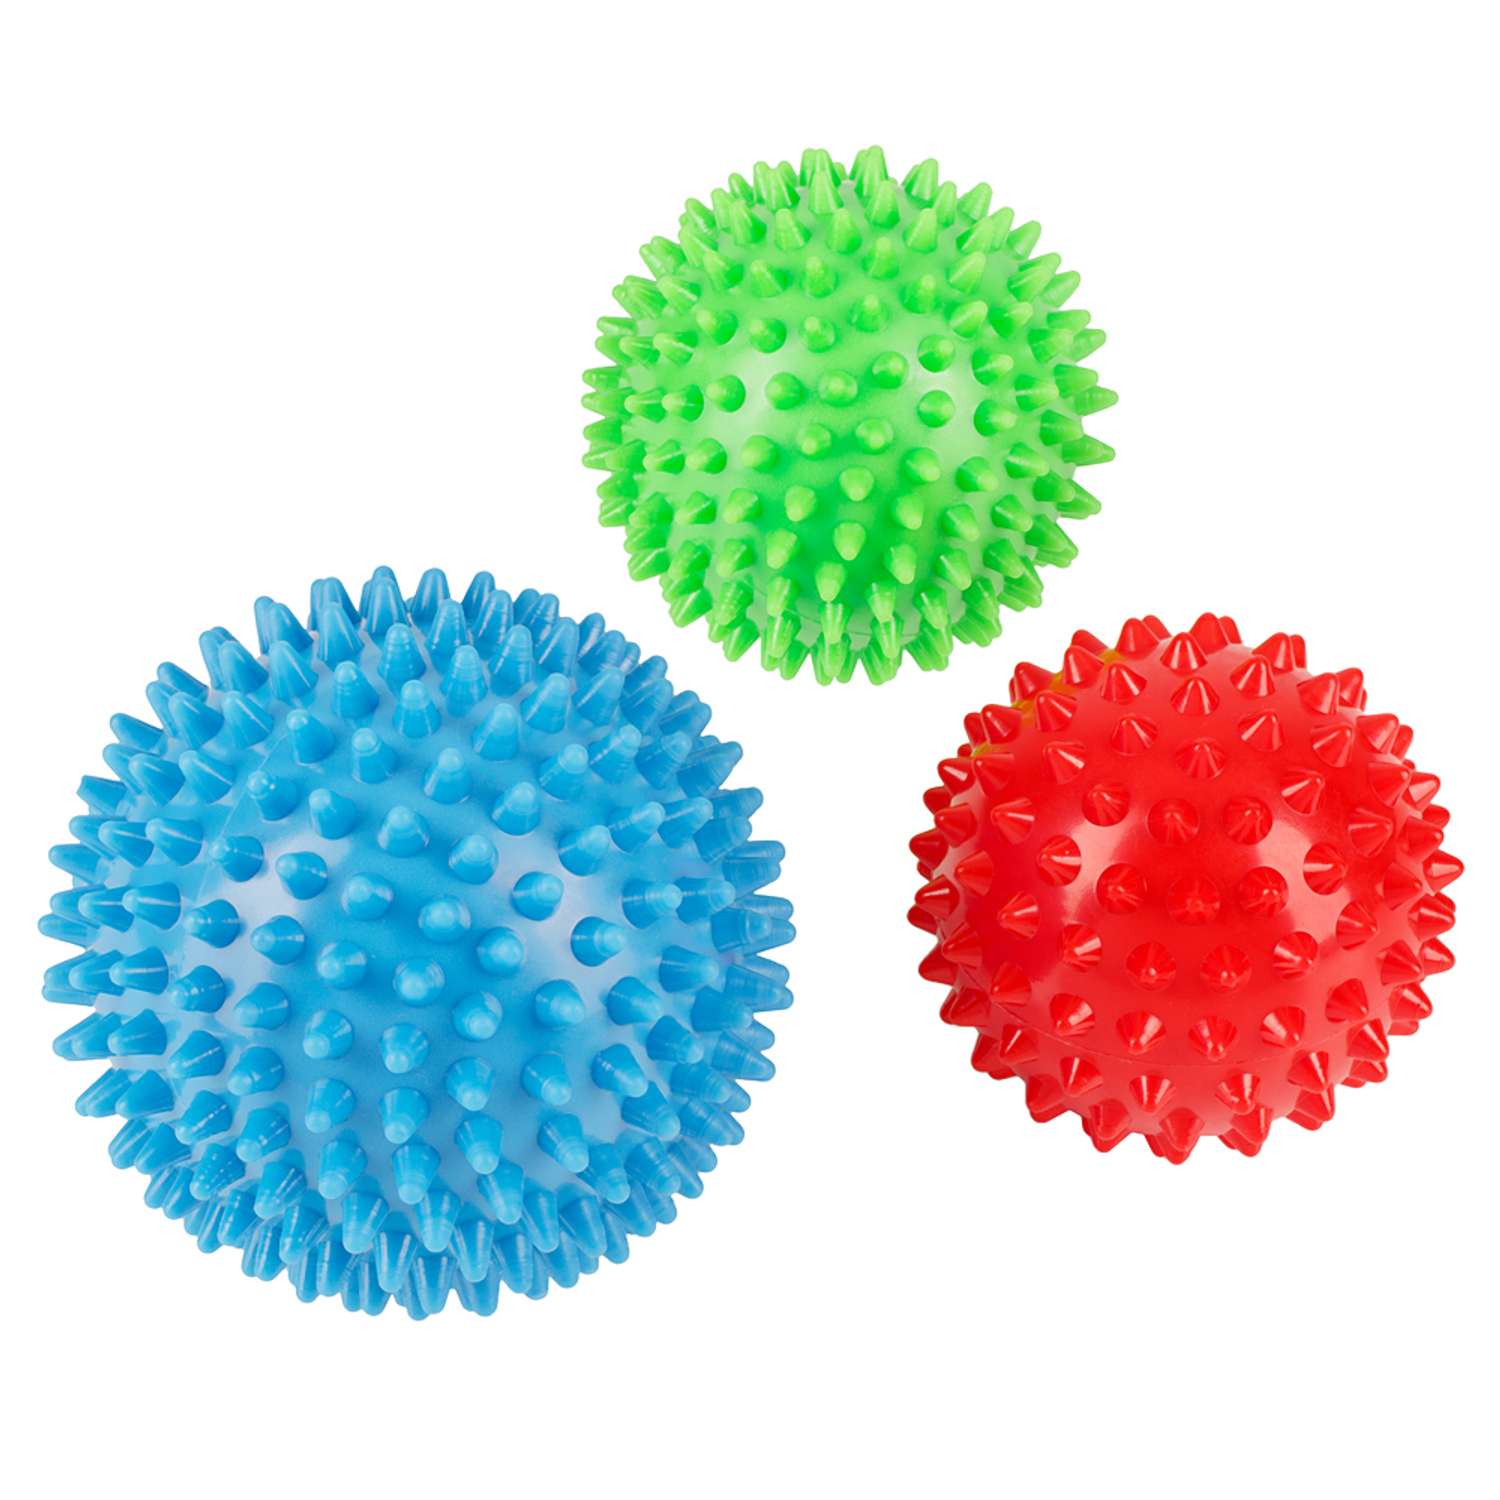 Комплект из 3 массажных мячей STRONG BODY жестких с игольчатой поверхностью: 6.5 см 7.5 см 8.5 см - фото 3